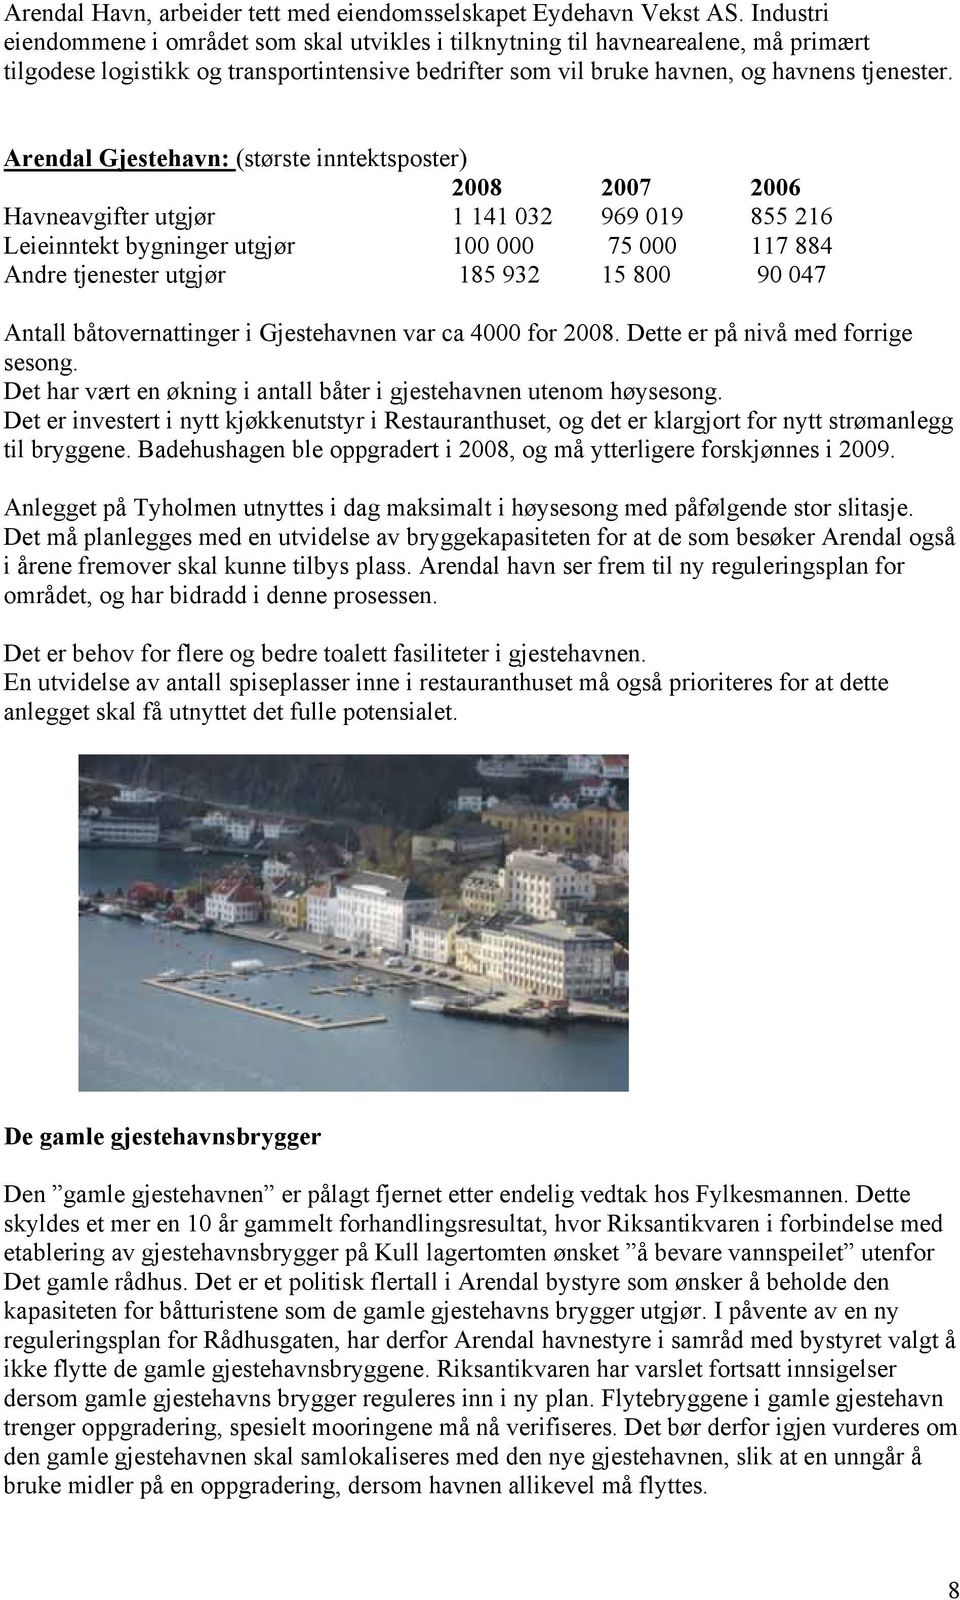 Arendal Gjestehavn: (største inntektsposter) 2008 2007 2006 Havneavgifter utgjør 1 141 032 969 019 855 216 Leieinntekt bygninger utgjør 100 000 75 000 117 884 Andre tjenester utgjør 185 932 15 800 90